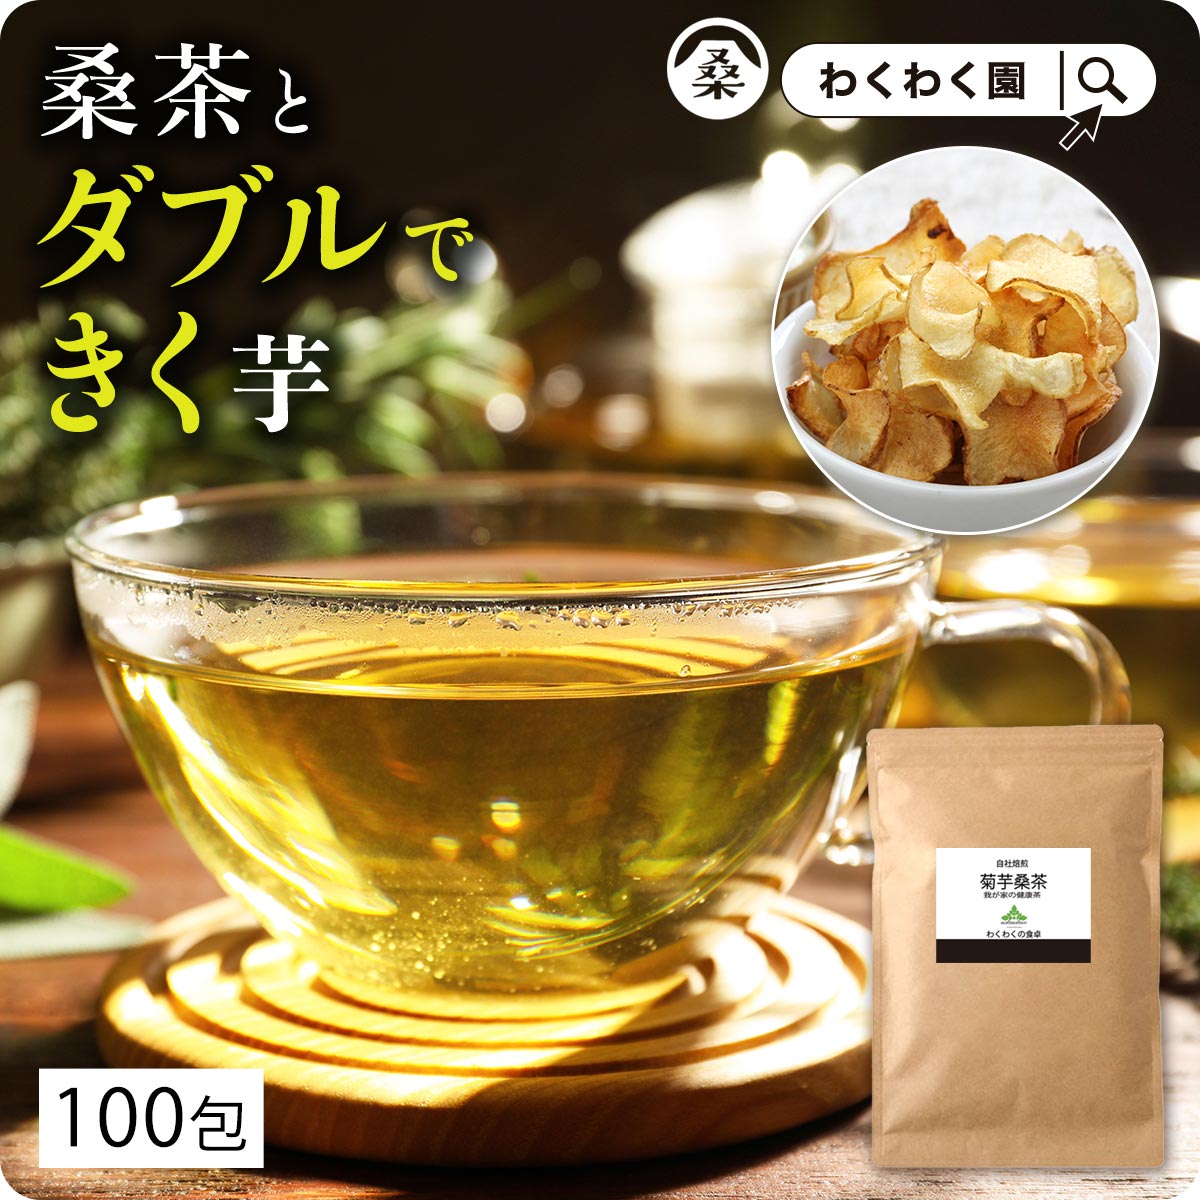 わくわく園 菊芋桑茶 ティーバッグ2g 100包 × 1袋の商品画像